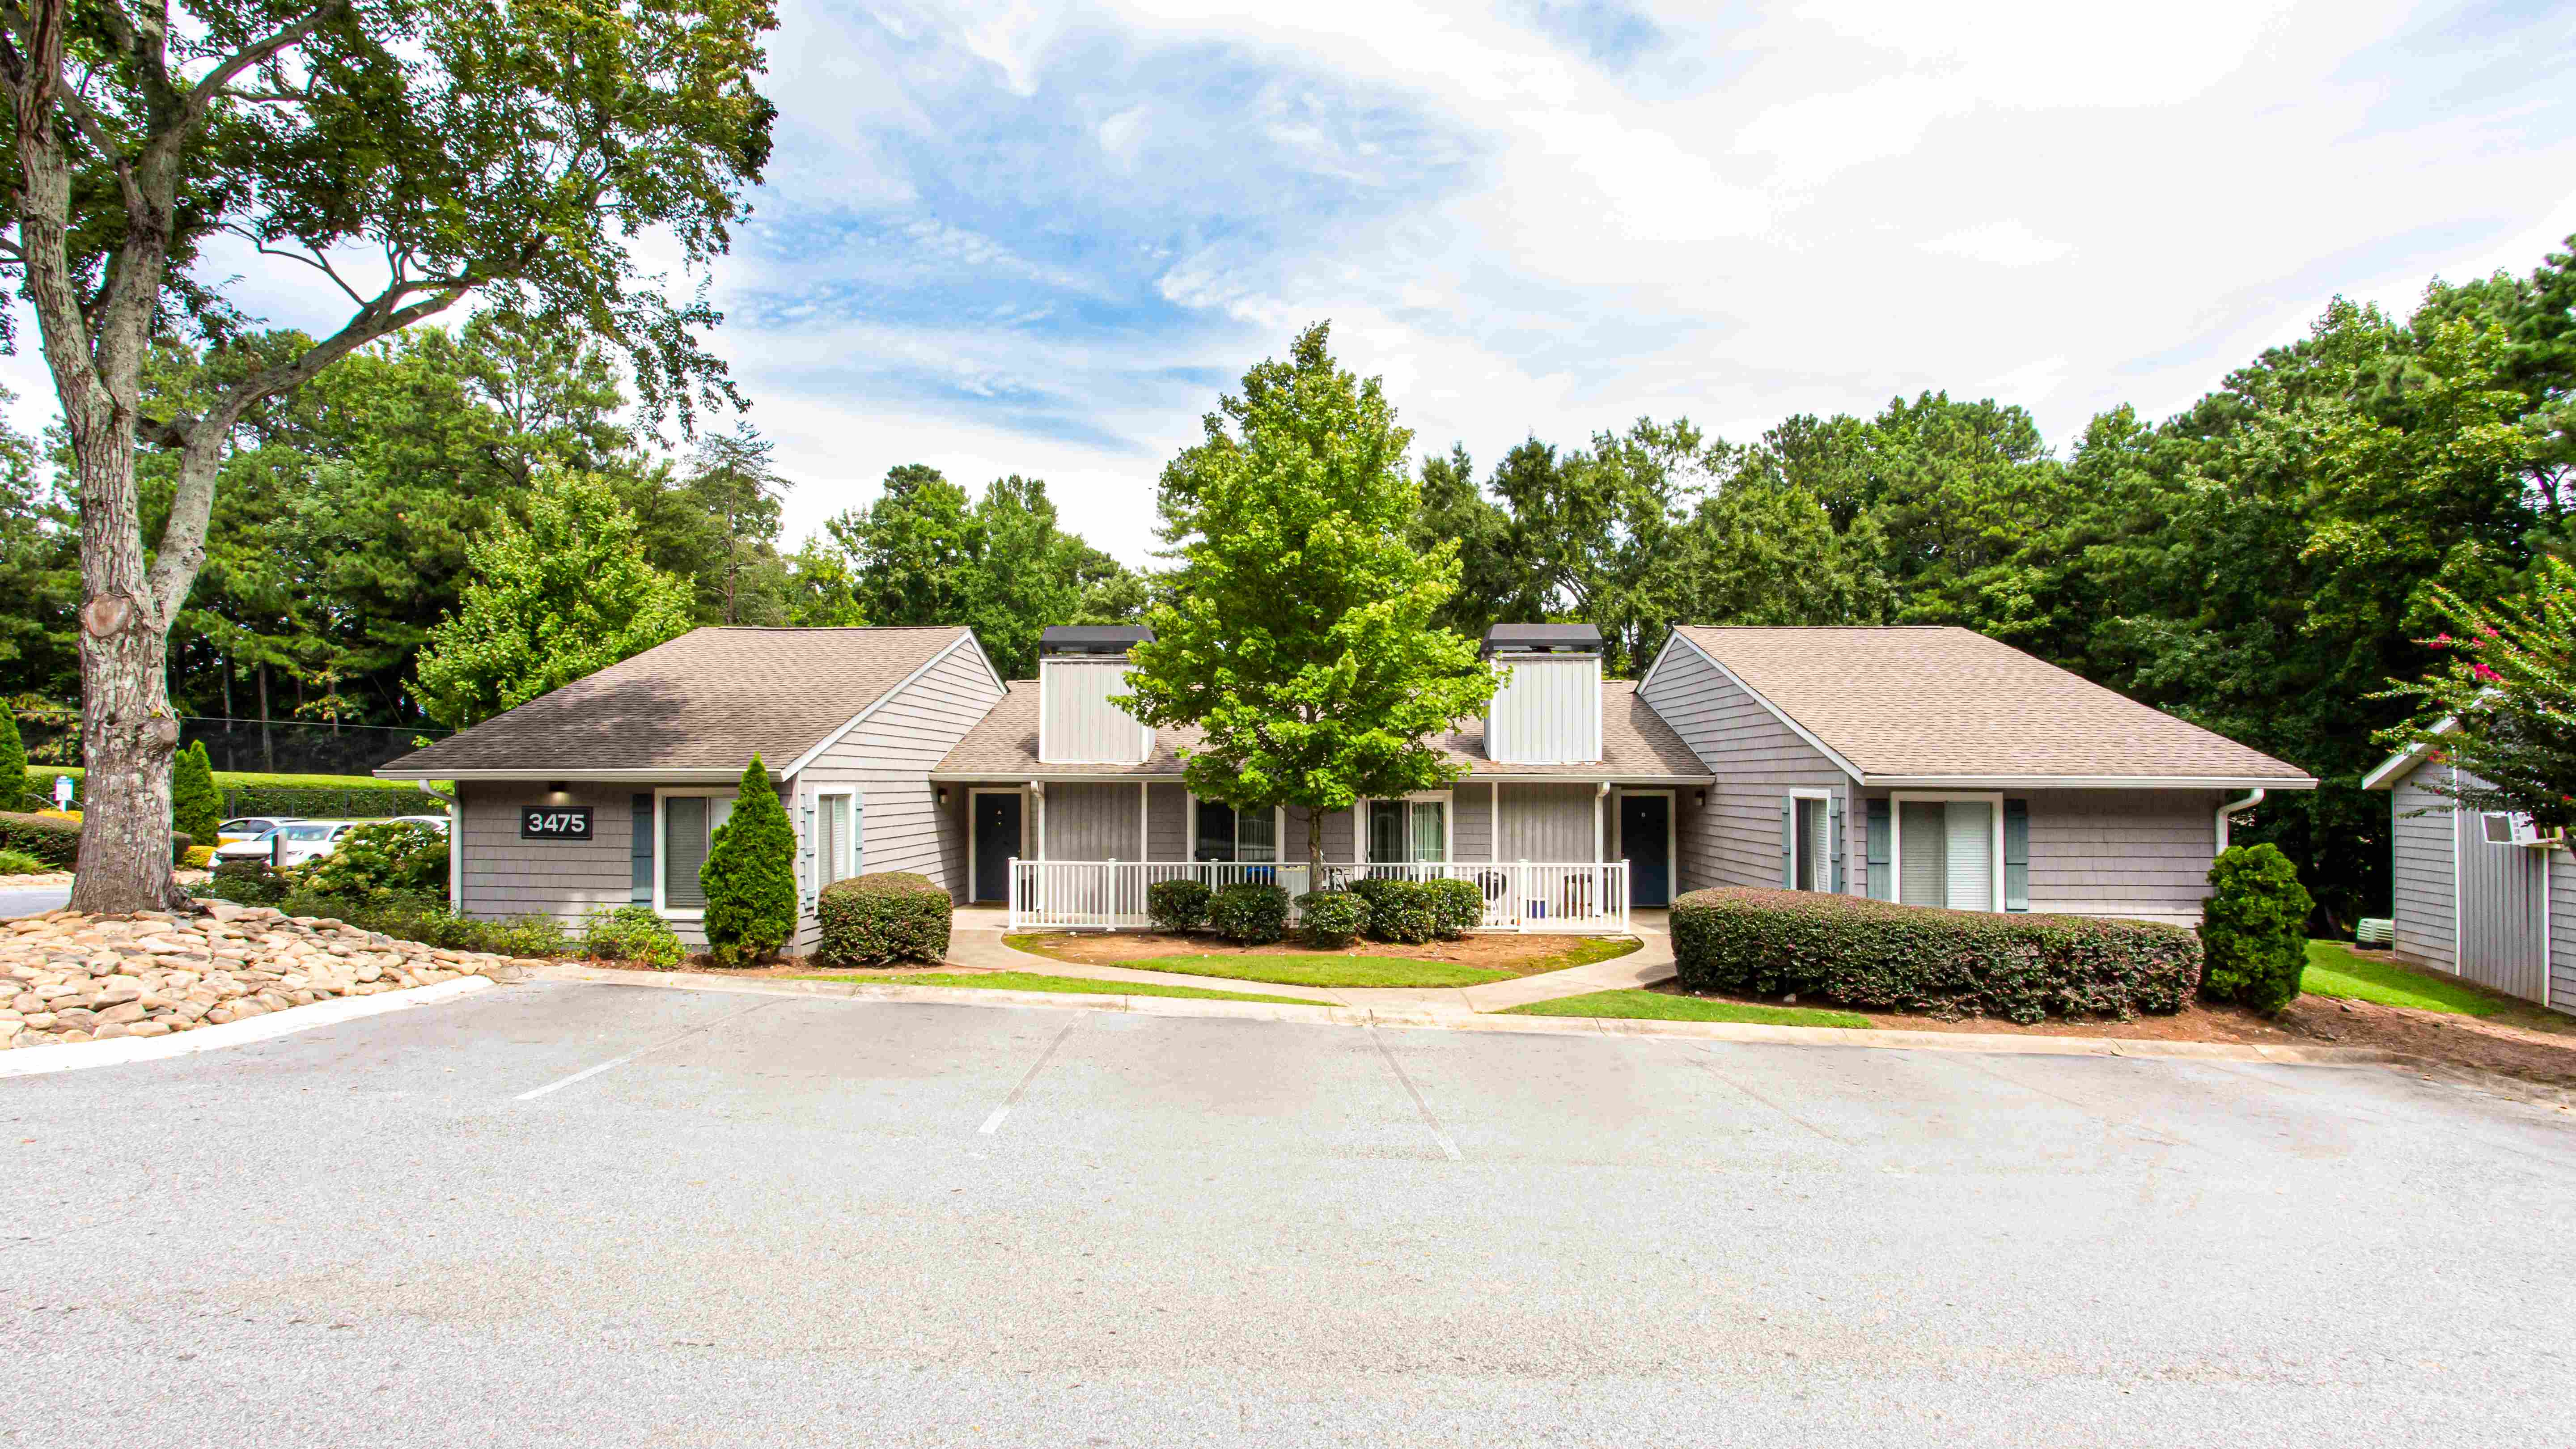 Midwood Estates Located in Doraville, GA exterior view